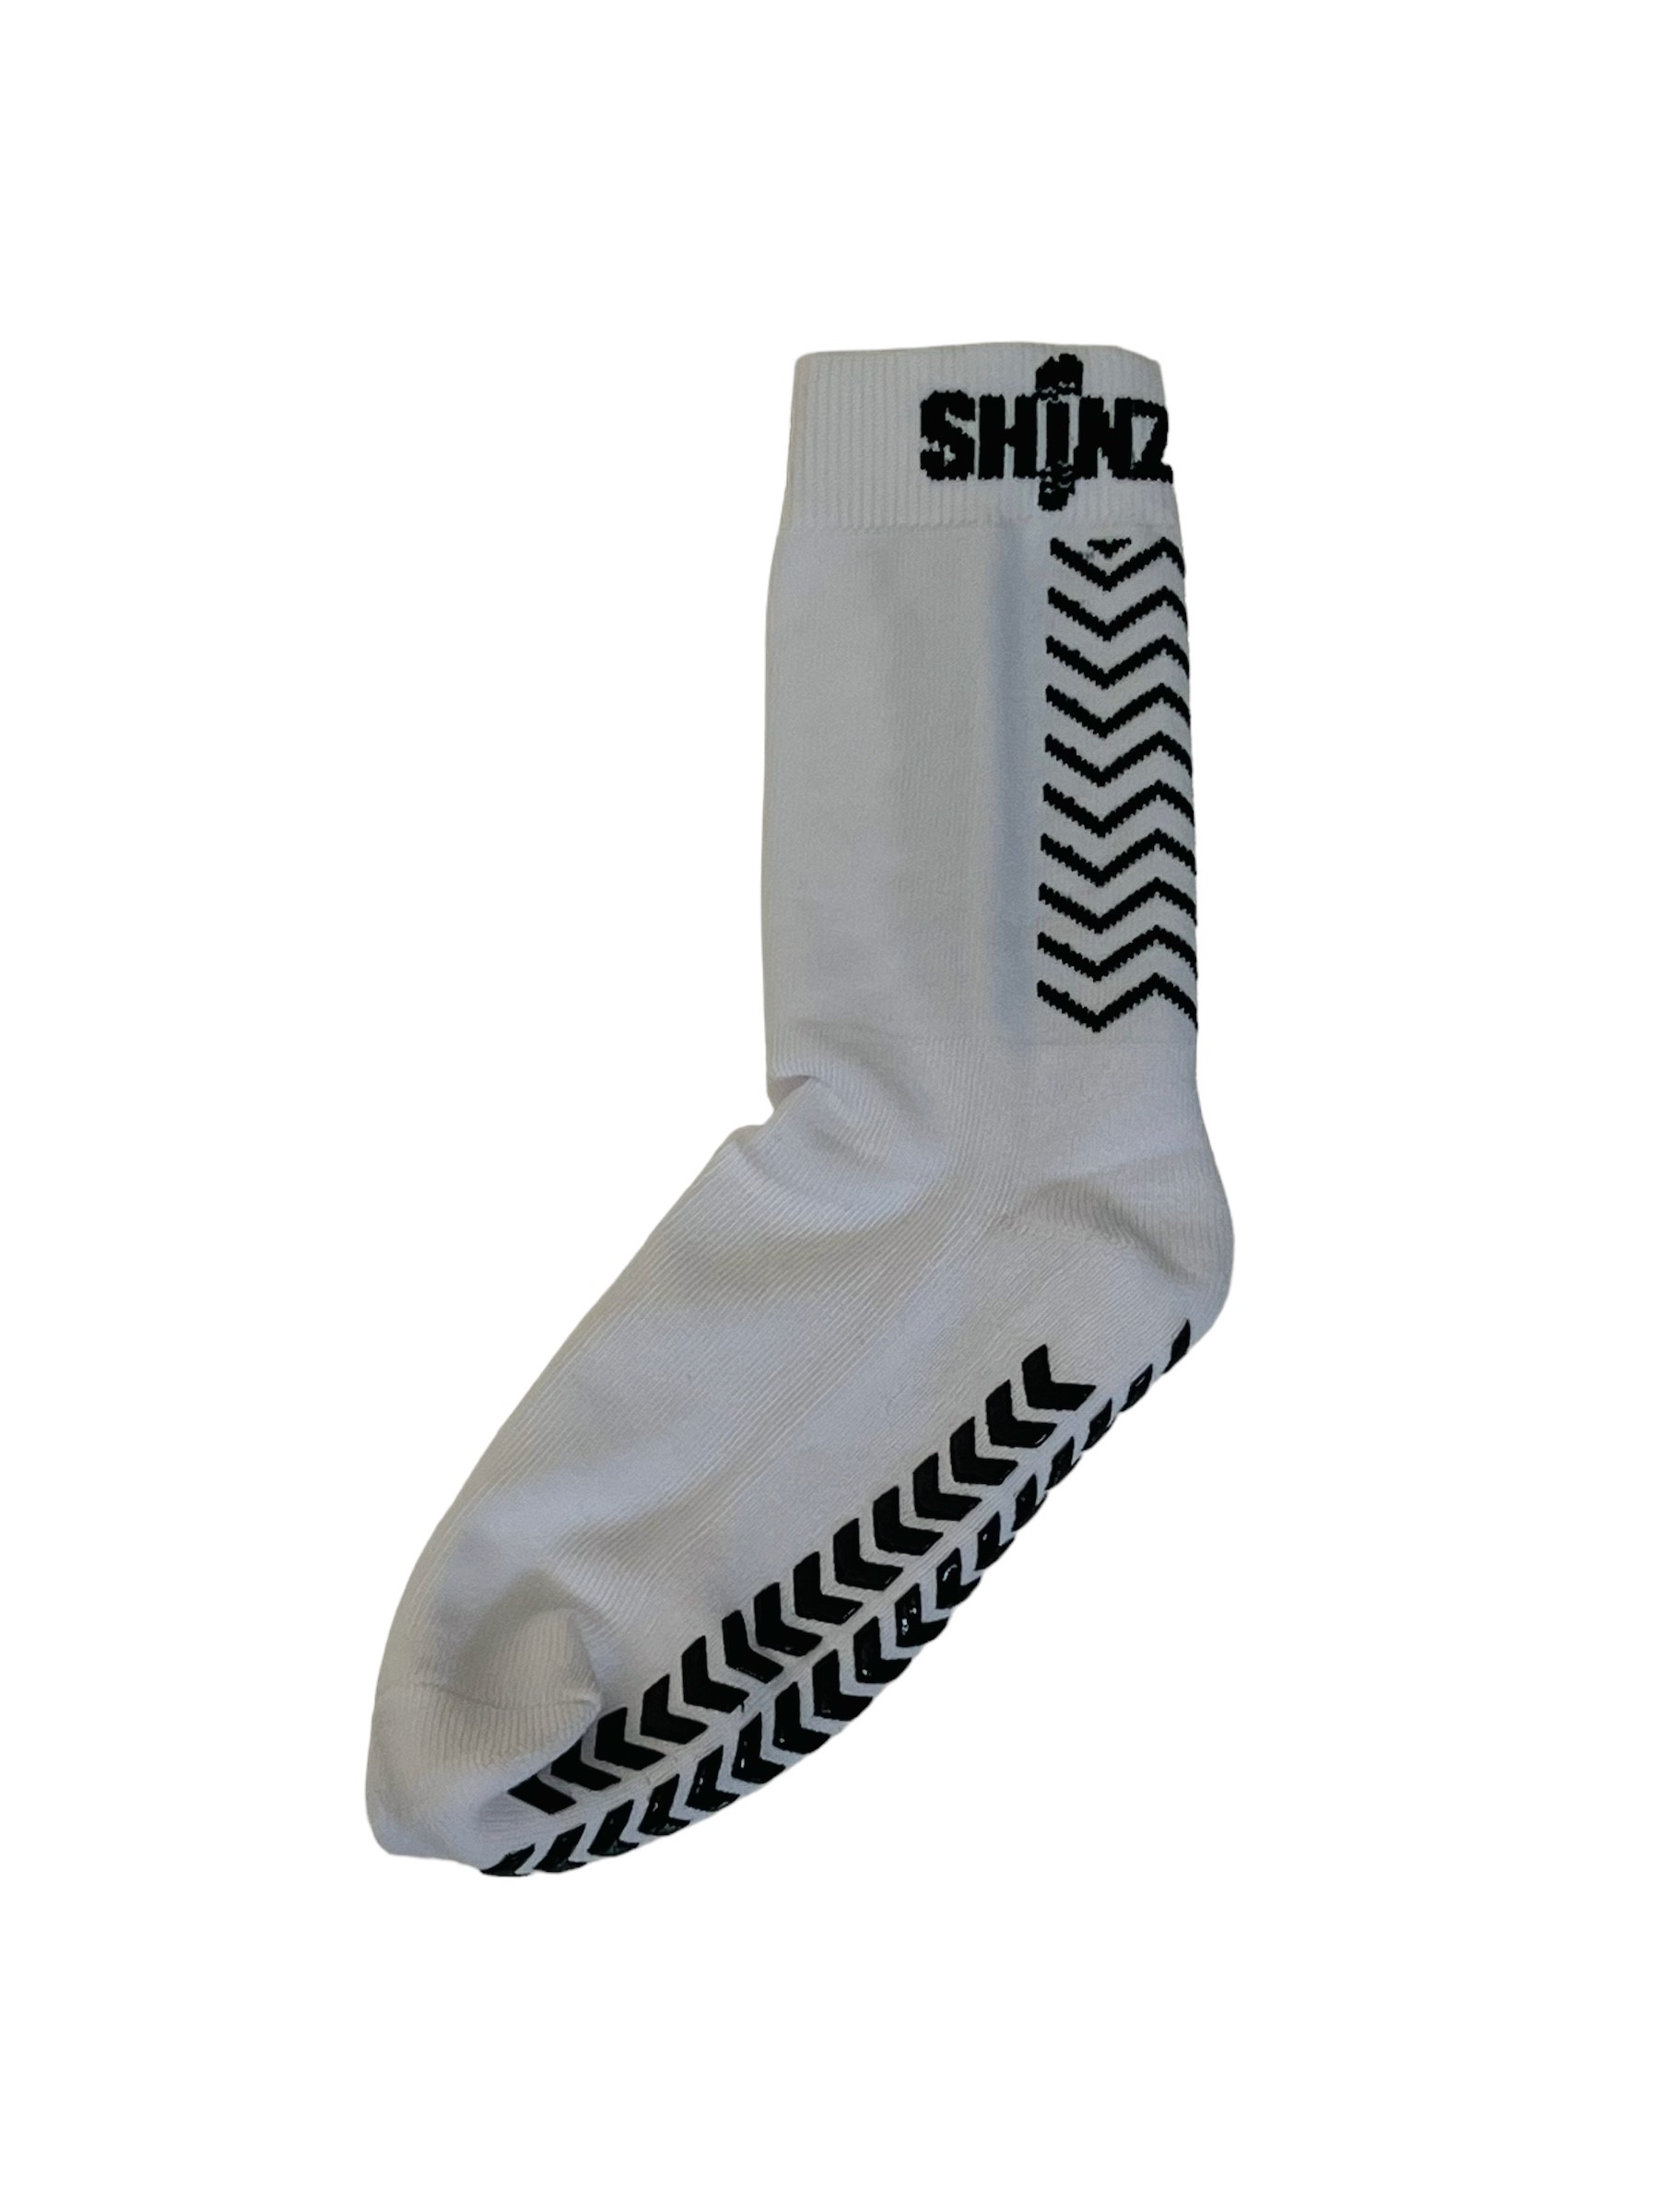 Grip Socks (Kids) - Shinz UK